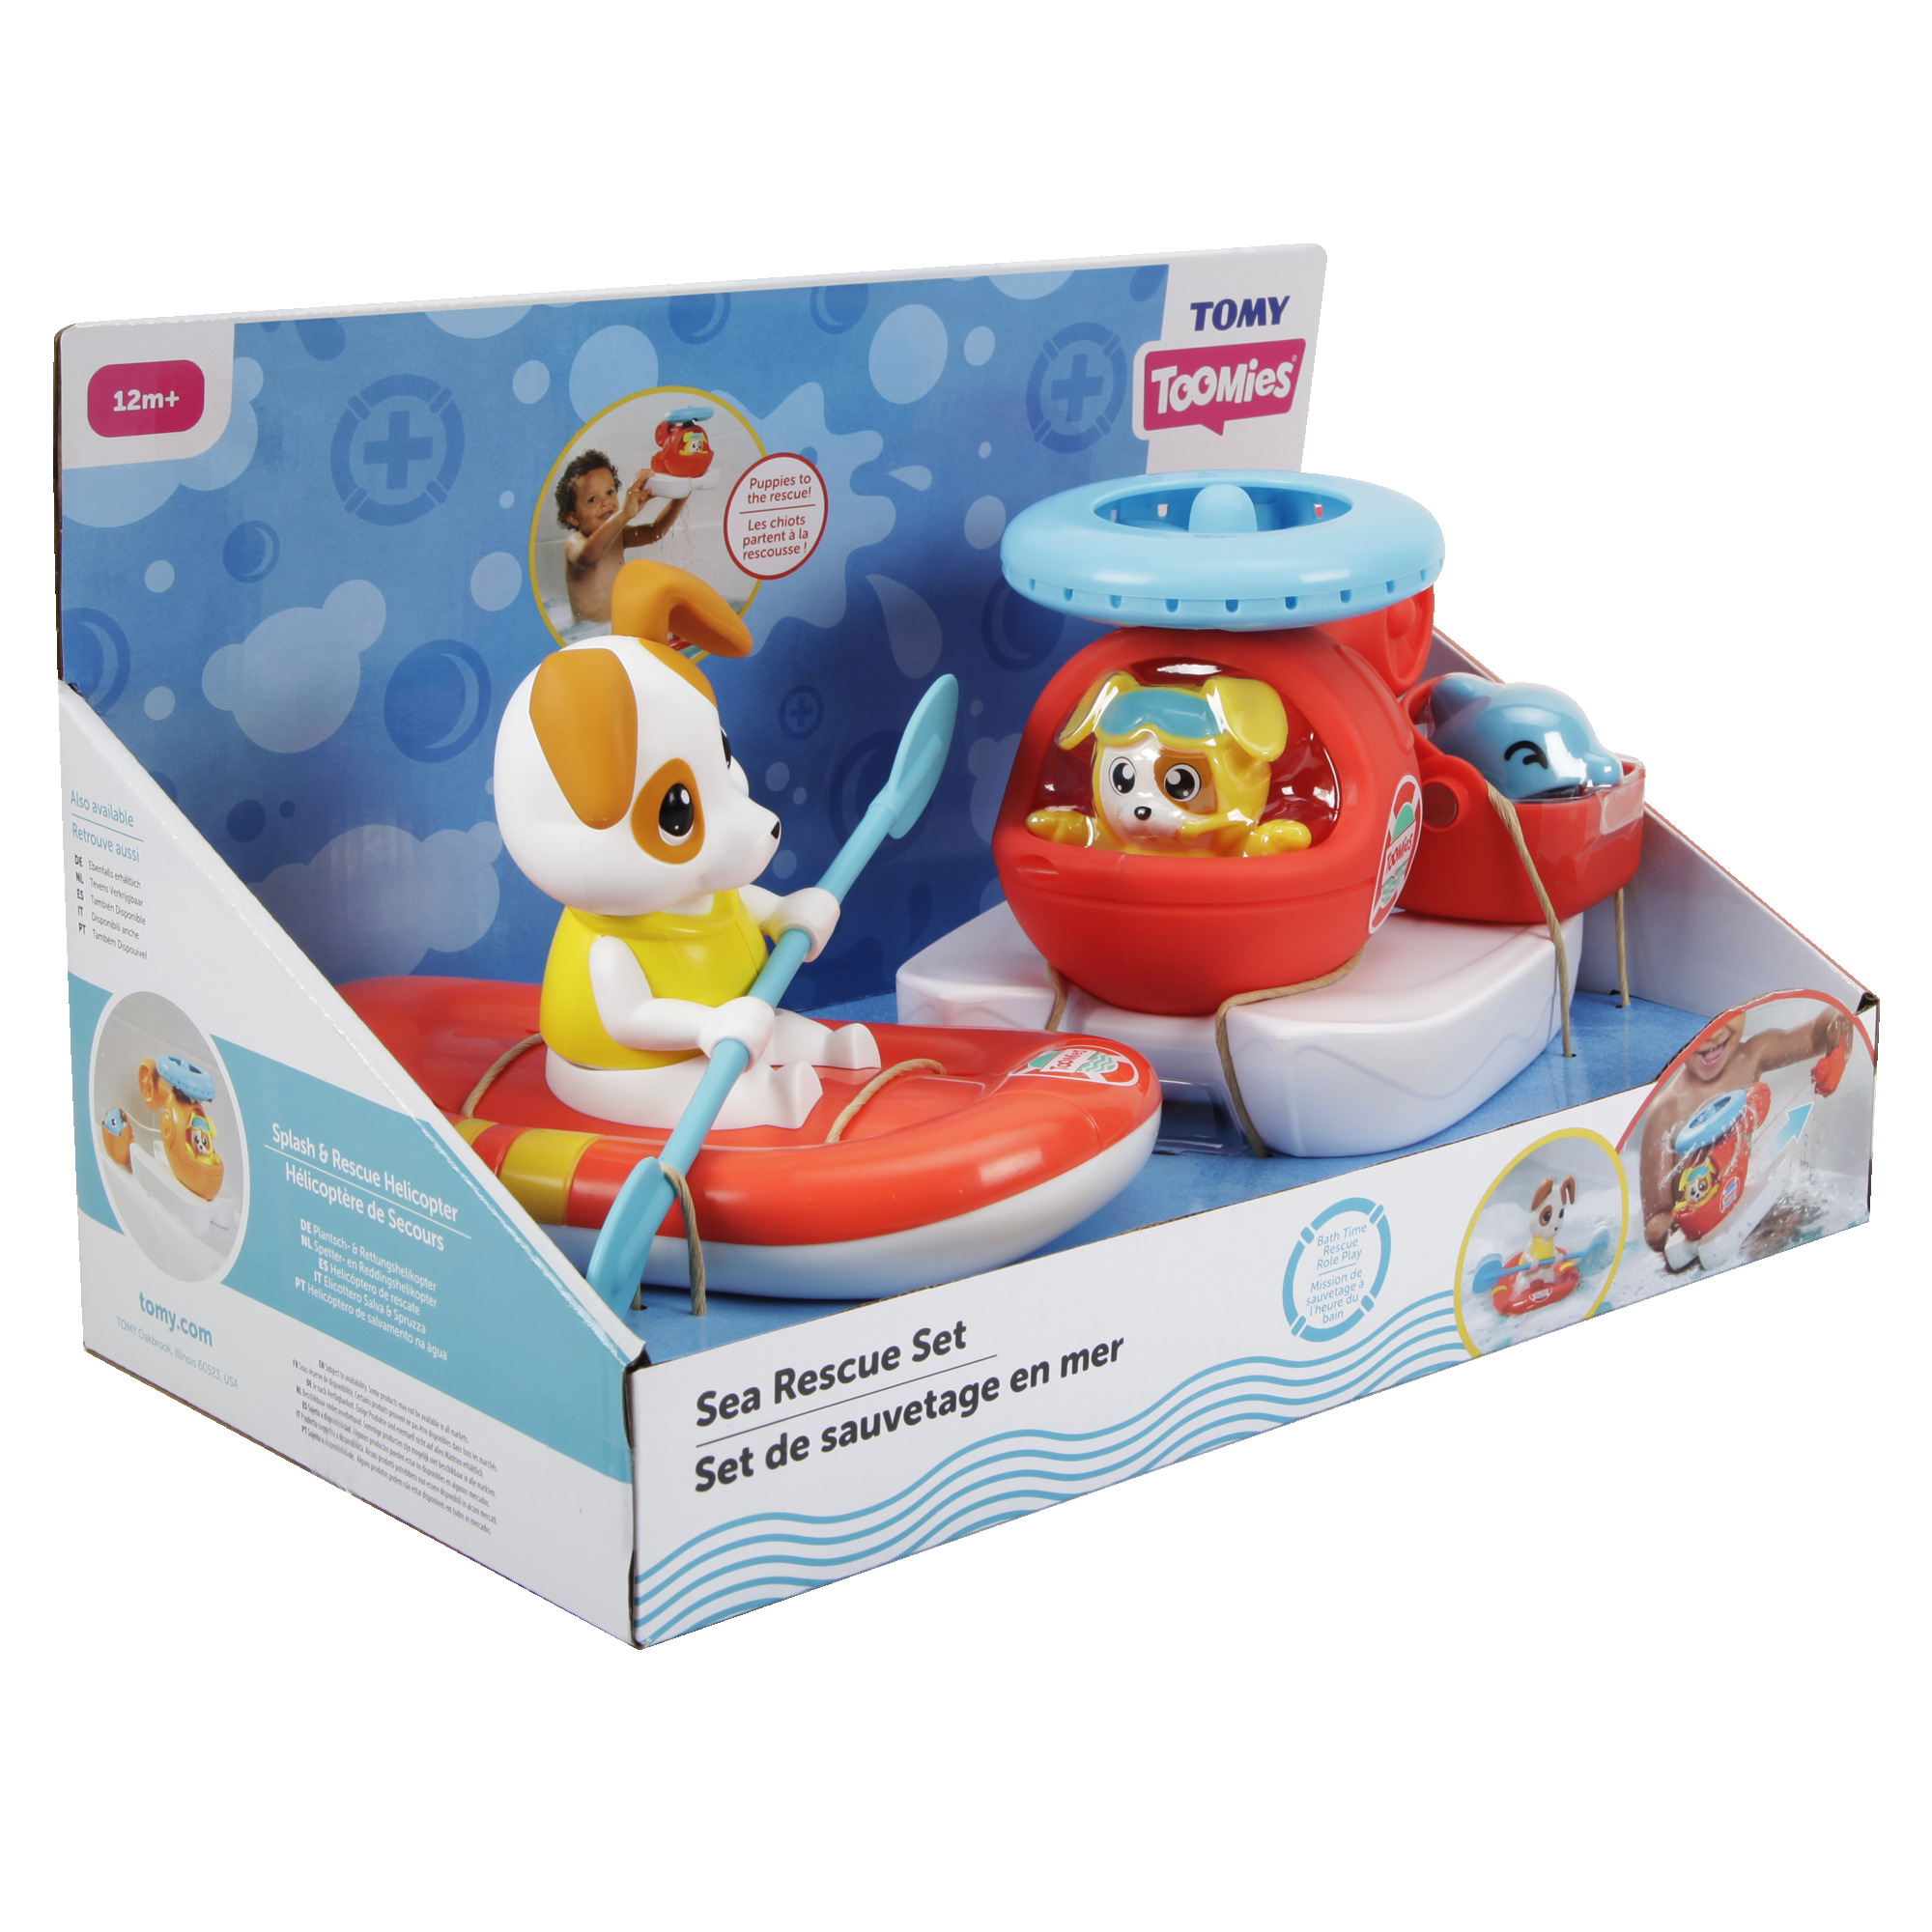 Іграшки для ванної Toomies Човен і гелікоптер (E73307)